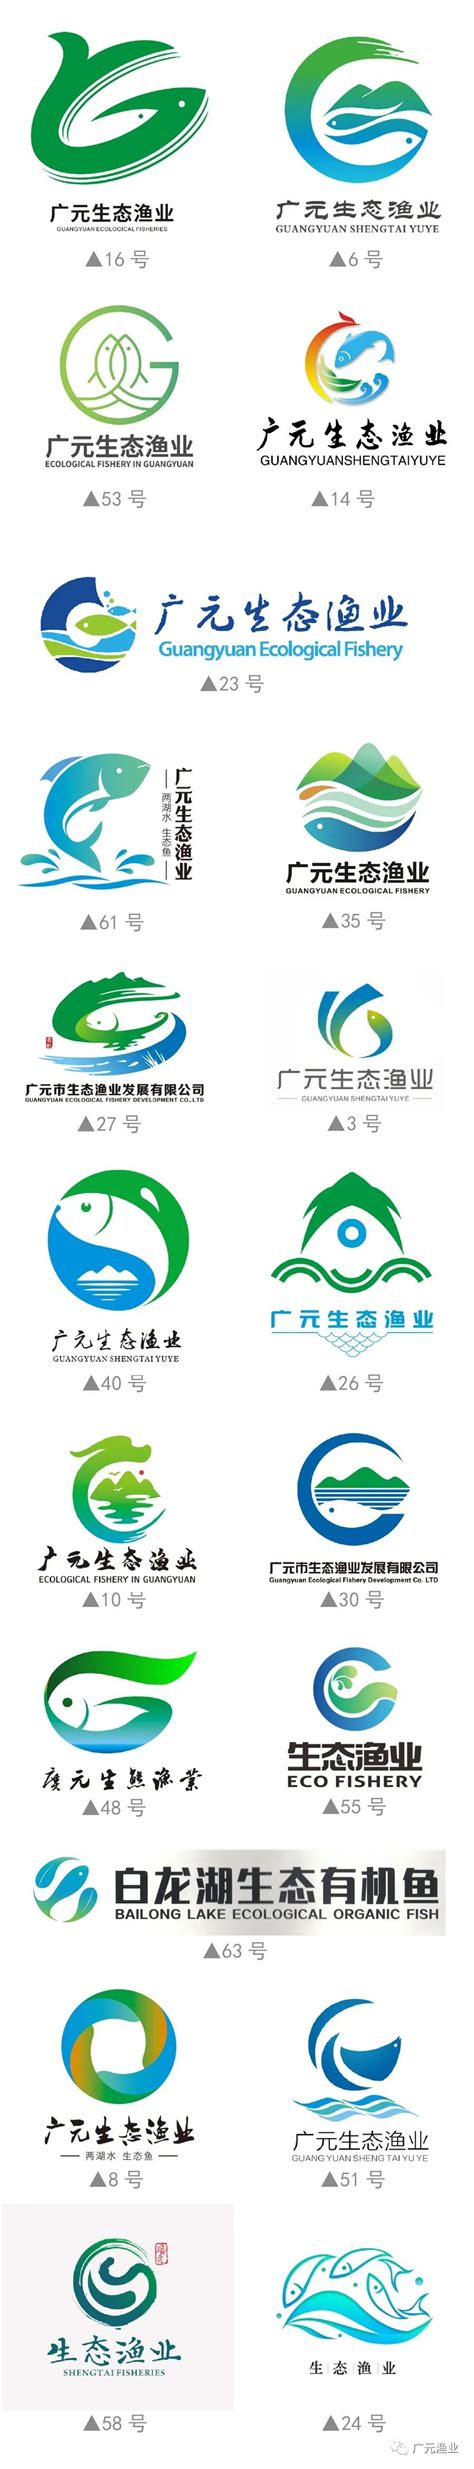 广元市生态渔业发展有限公司LOGO征集结果公示-设计揭晓-设计大赛网